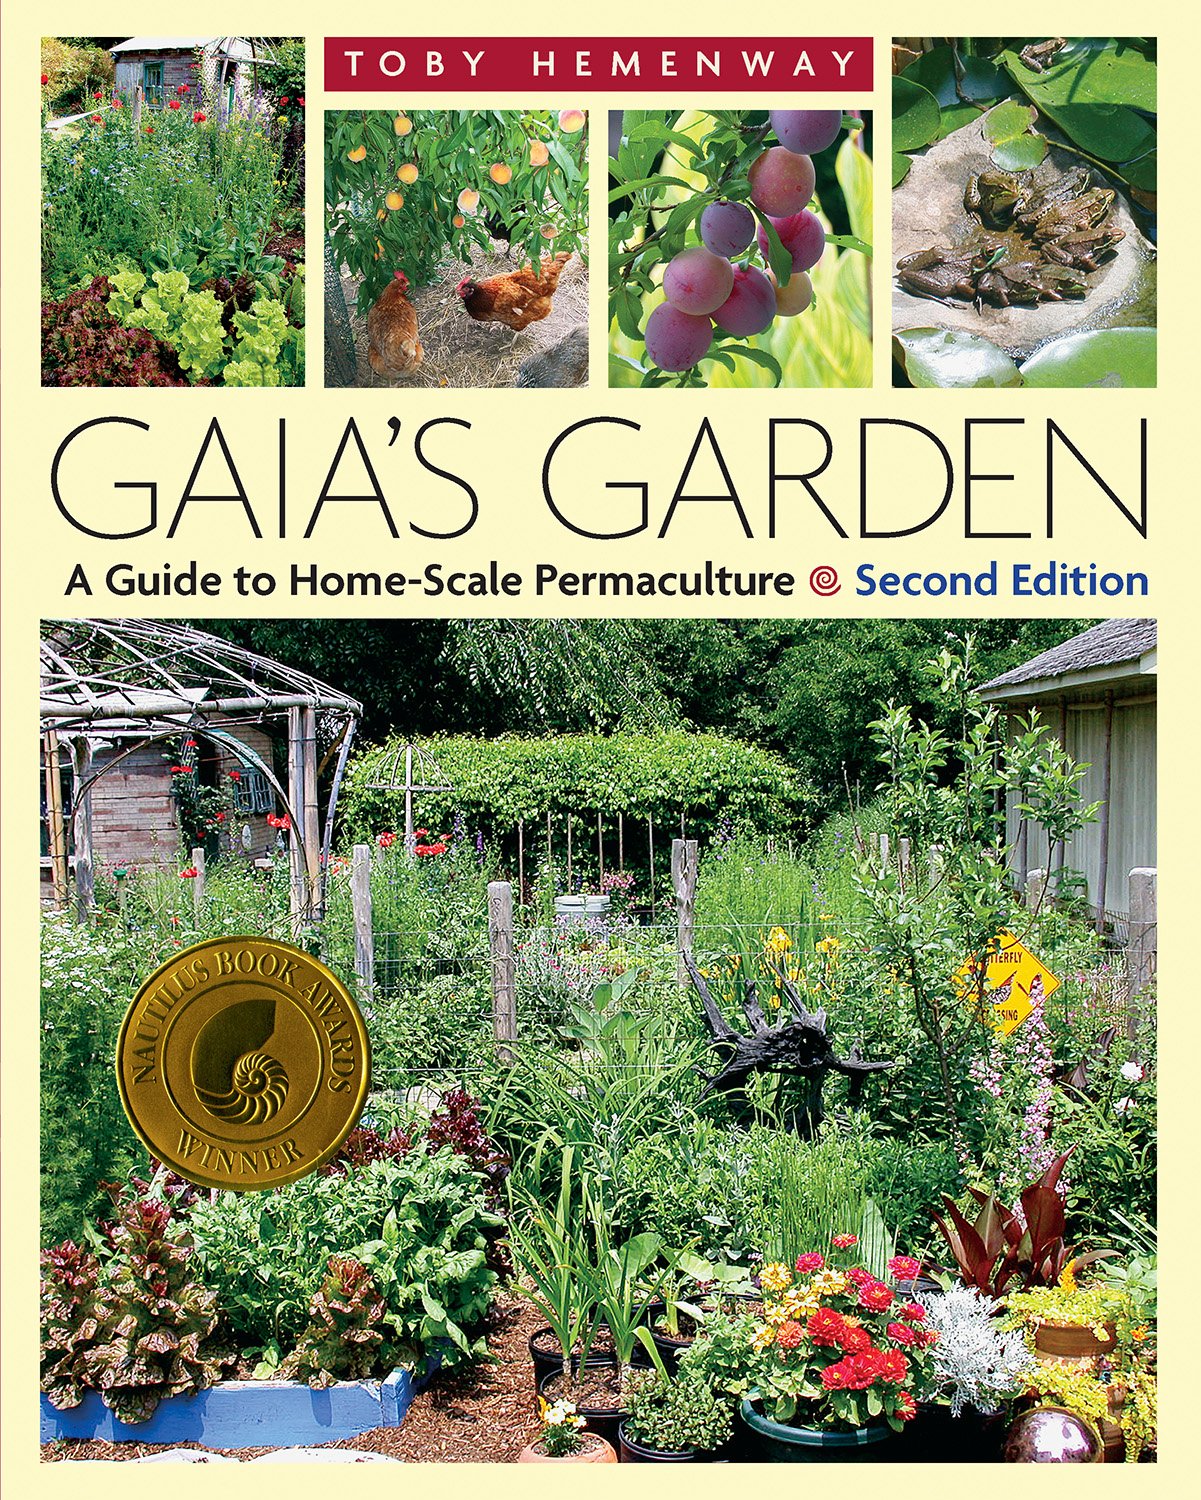 Gaia's garden cover